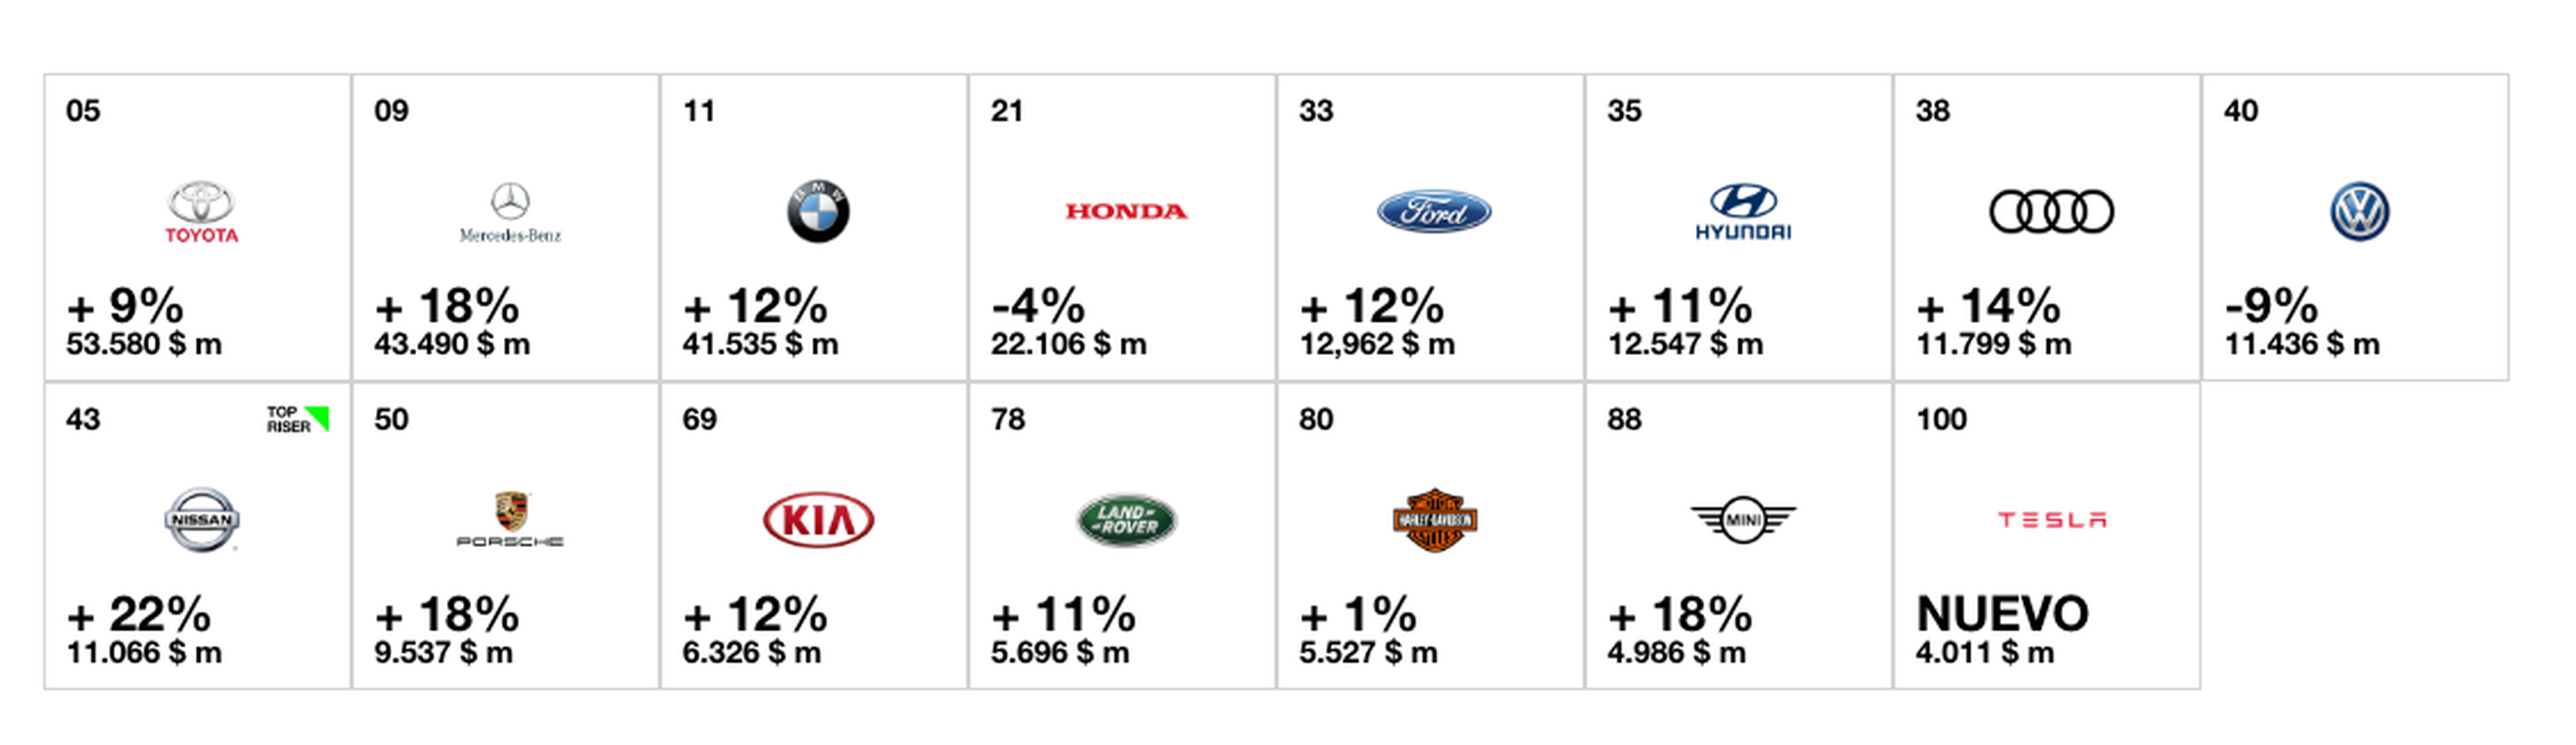 Las 10 marcas de coches más valiosas del mundo